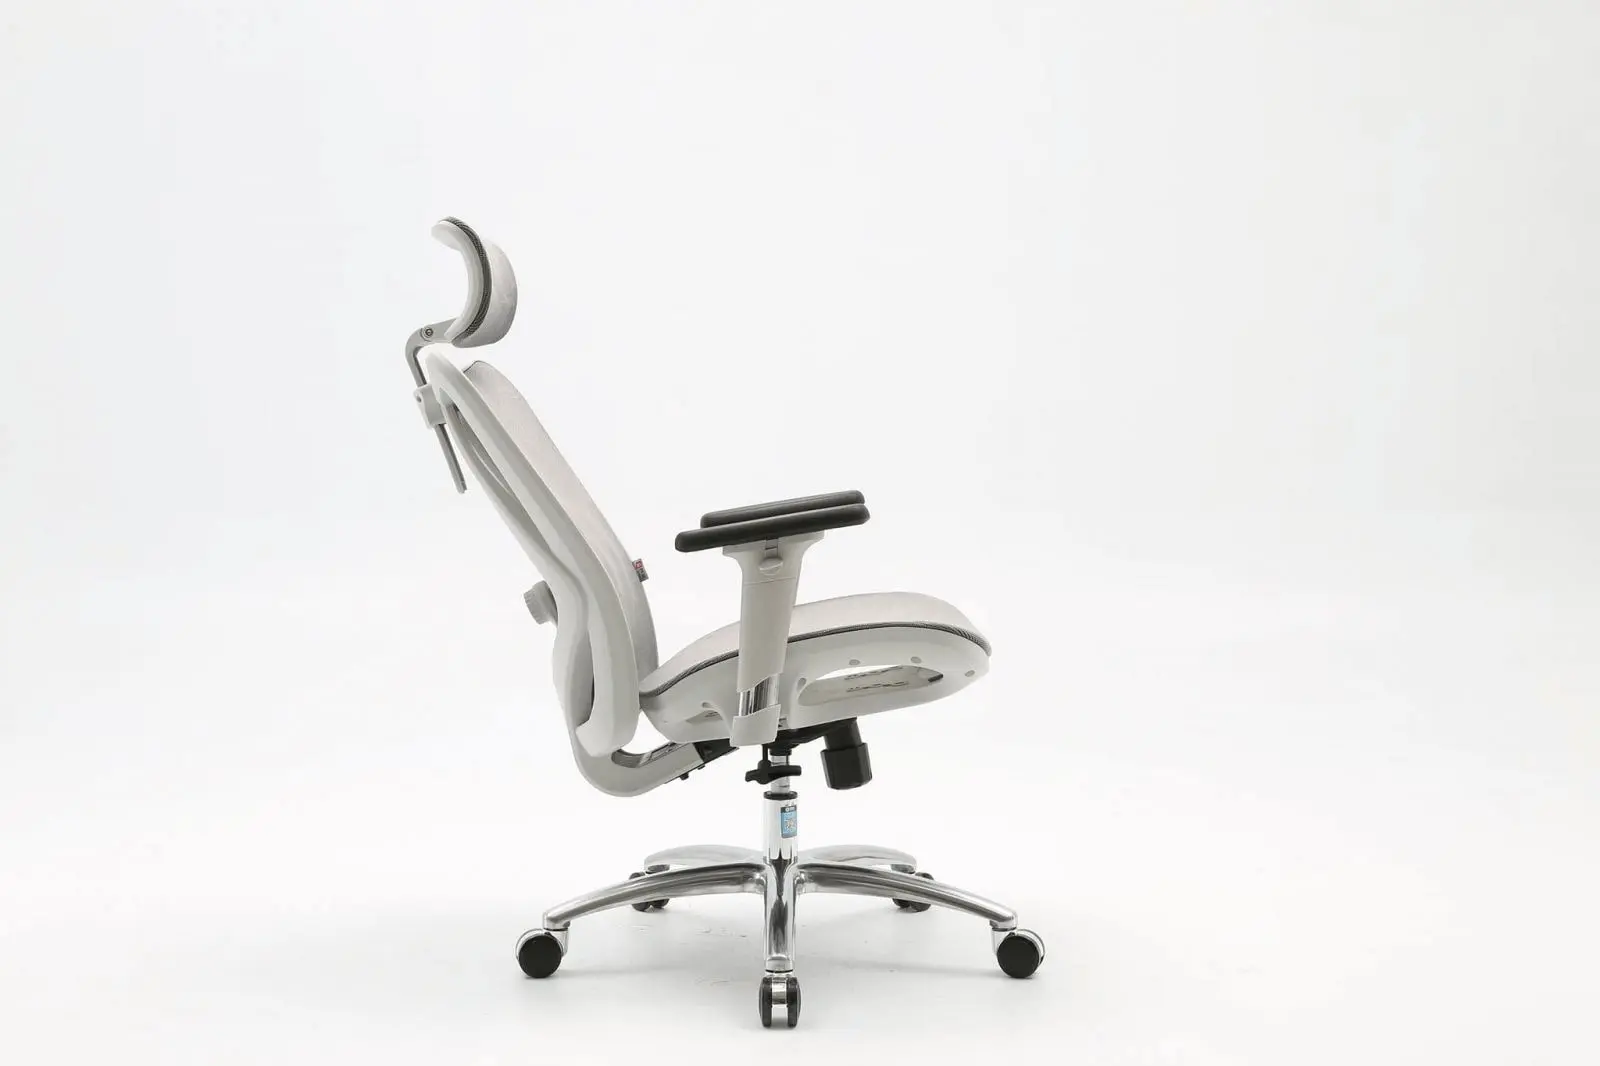 Phần tay ghế được thiết kế hiện đại, linh động, dễ dàng thay đổi chiều hướng